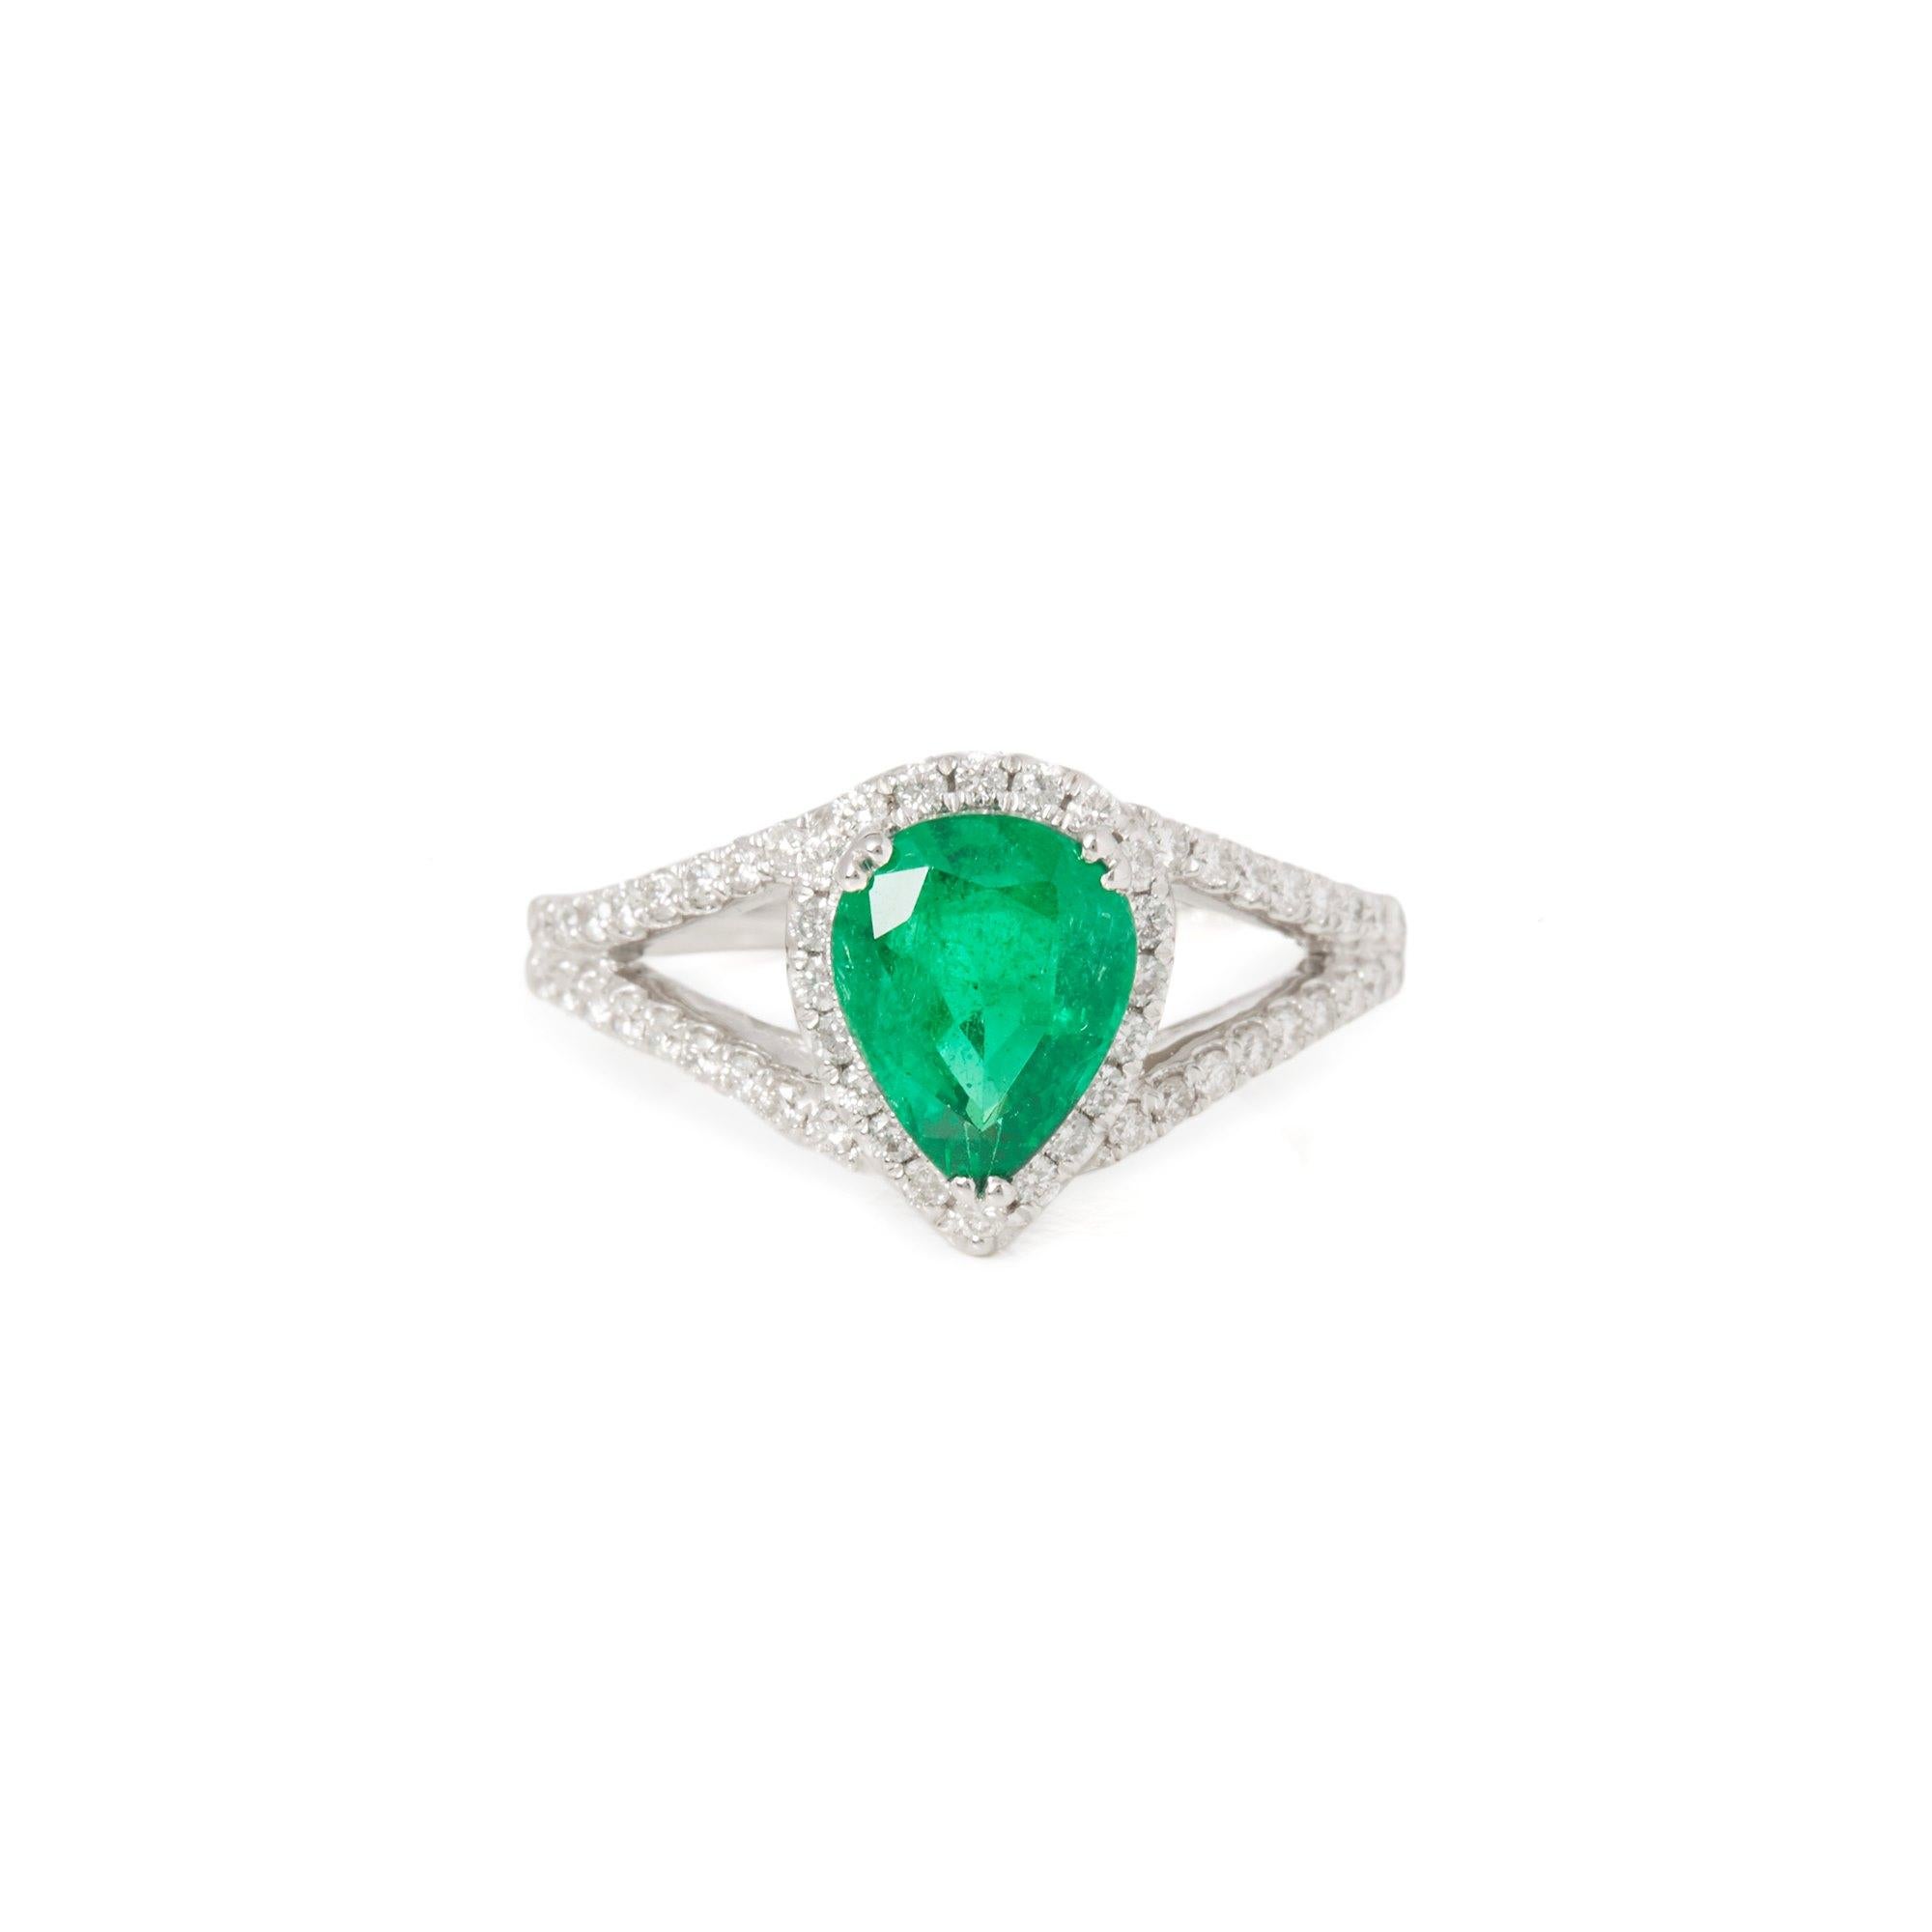 Dieser von David Jerome entworfene Ring stammt aus seiner Privatsammlung und enthält einen Smaragd im Birnenschliff mit insgesamt 1,57 Karat. Mit runden Diamanten im Brillantschliff von insgesamt 0,71 Karat in einer Fassung aus 18 Karat Weißgold.